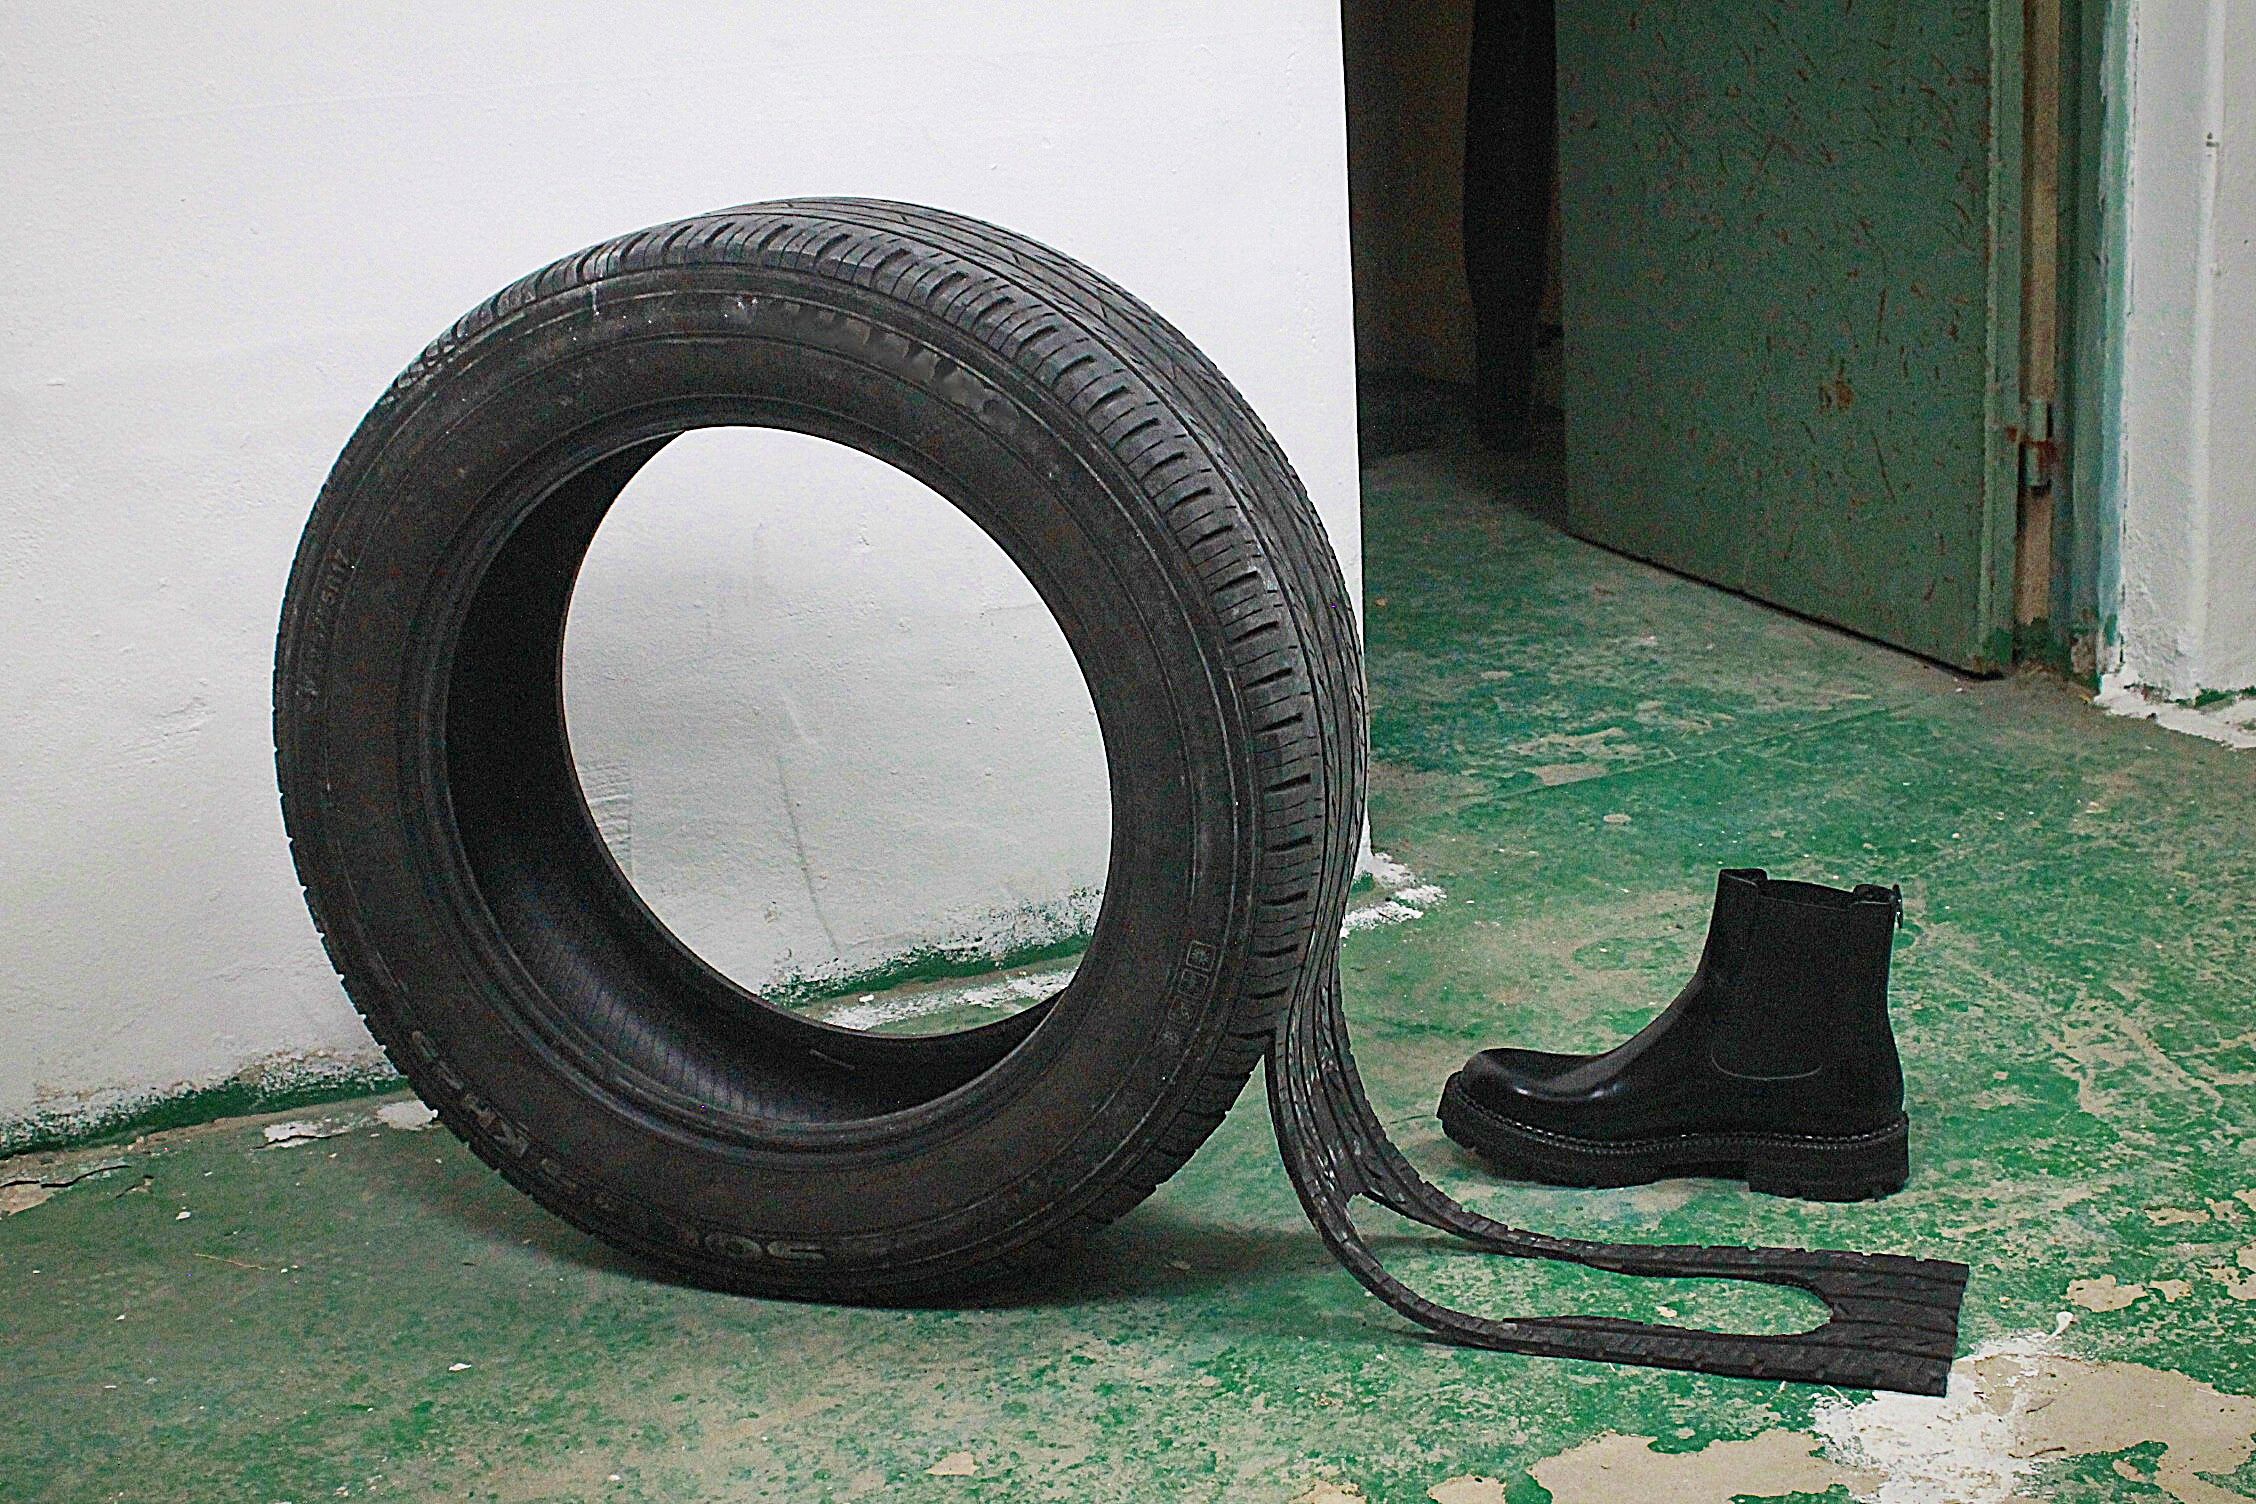 타이어를 그대로 활용하여 신발 밑창을 만드는 아이디어의 발상을 실현한 트래드앤그루브 신발